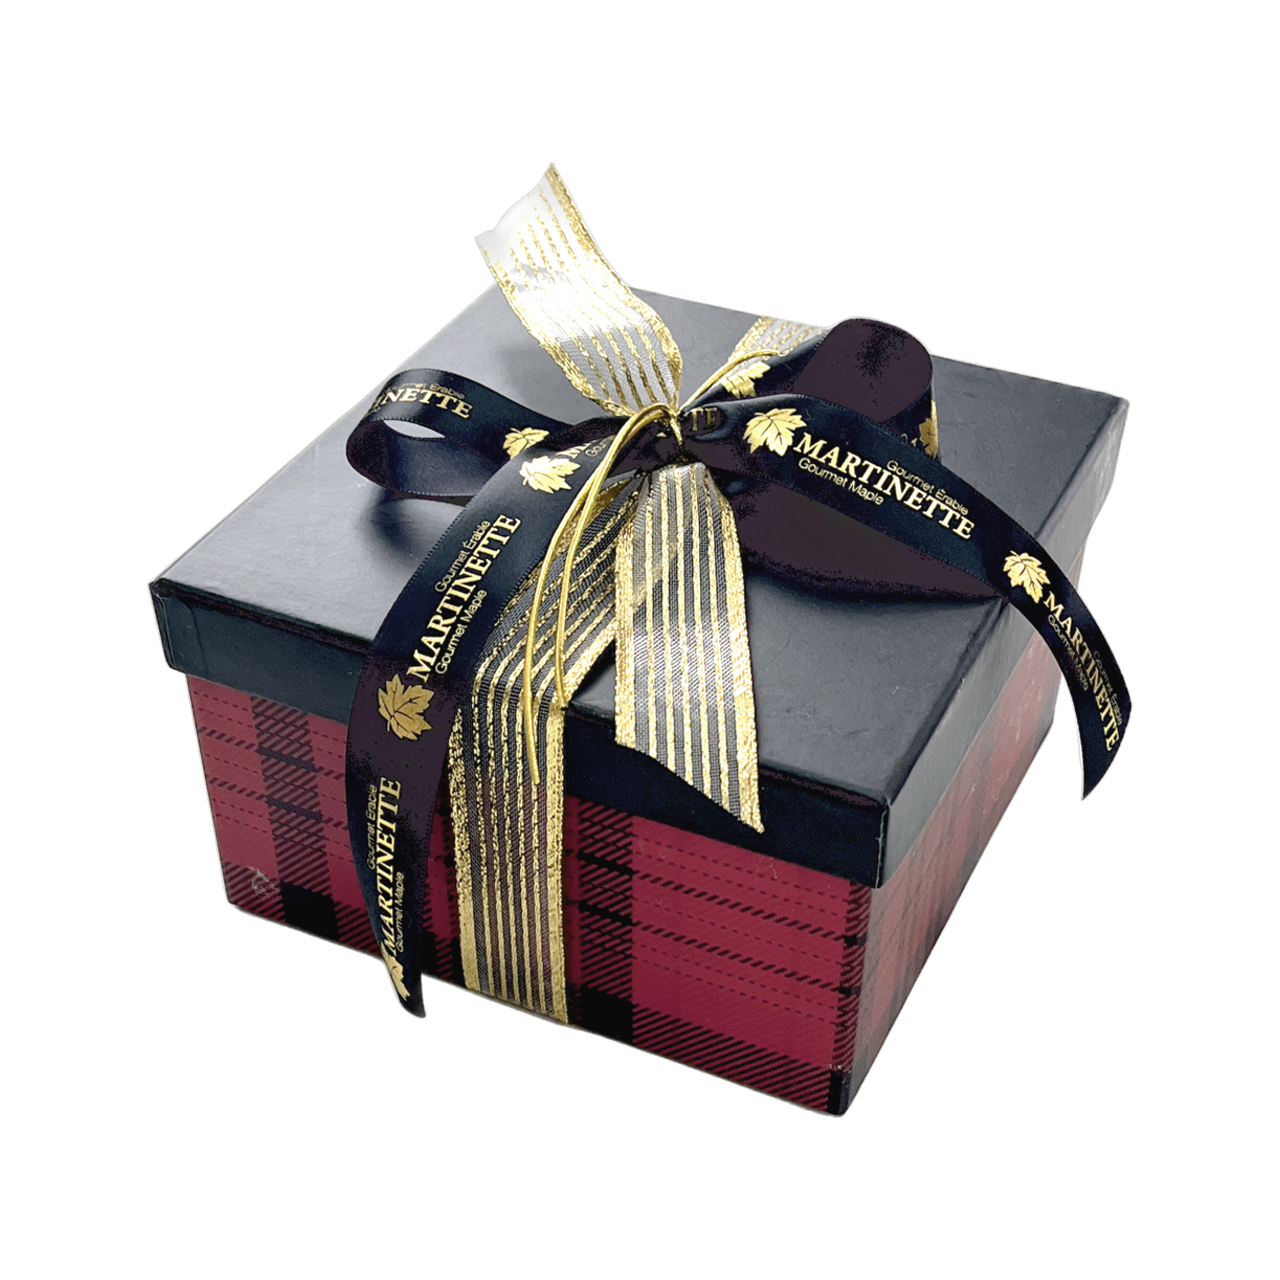 Packea packaging market - SPÉCIAL FIN D'ANNÉE 🔔🎄🎄🔔 La boîte bûche  Packéa est idéale pour les fêtes de fin d'année., met en valeur et facilite  le transport de vos bûches pâtissières de